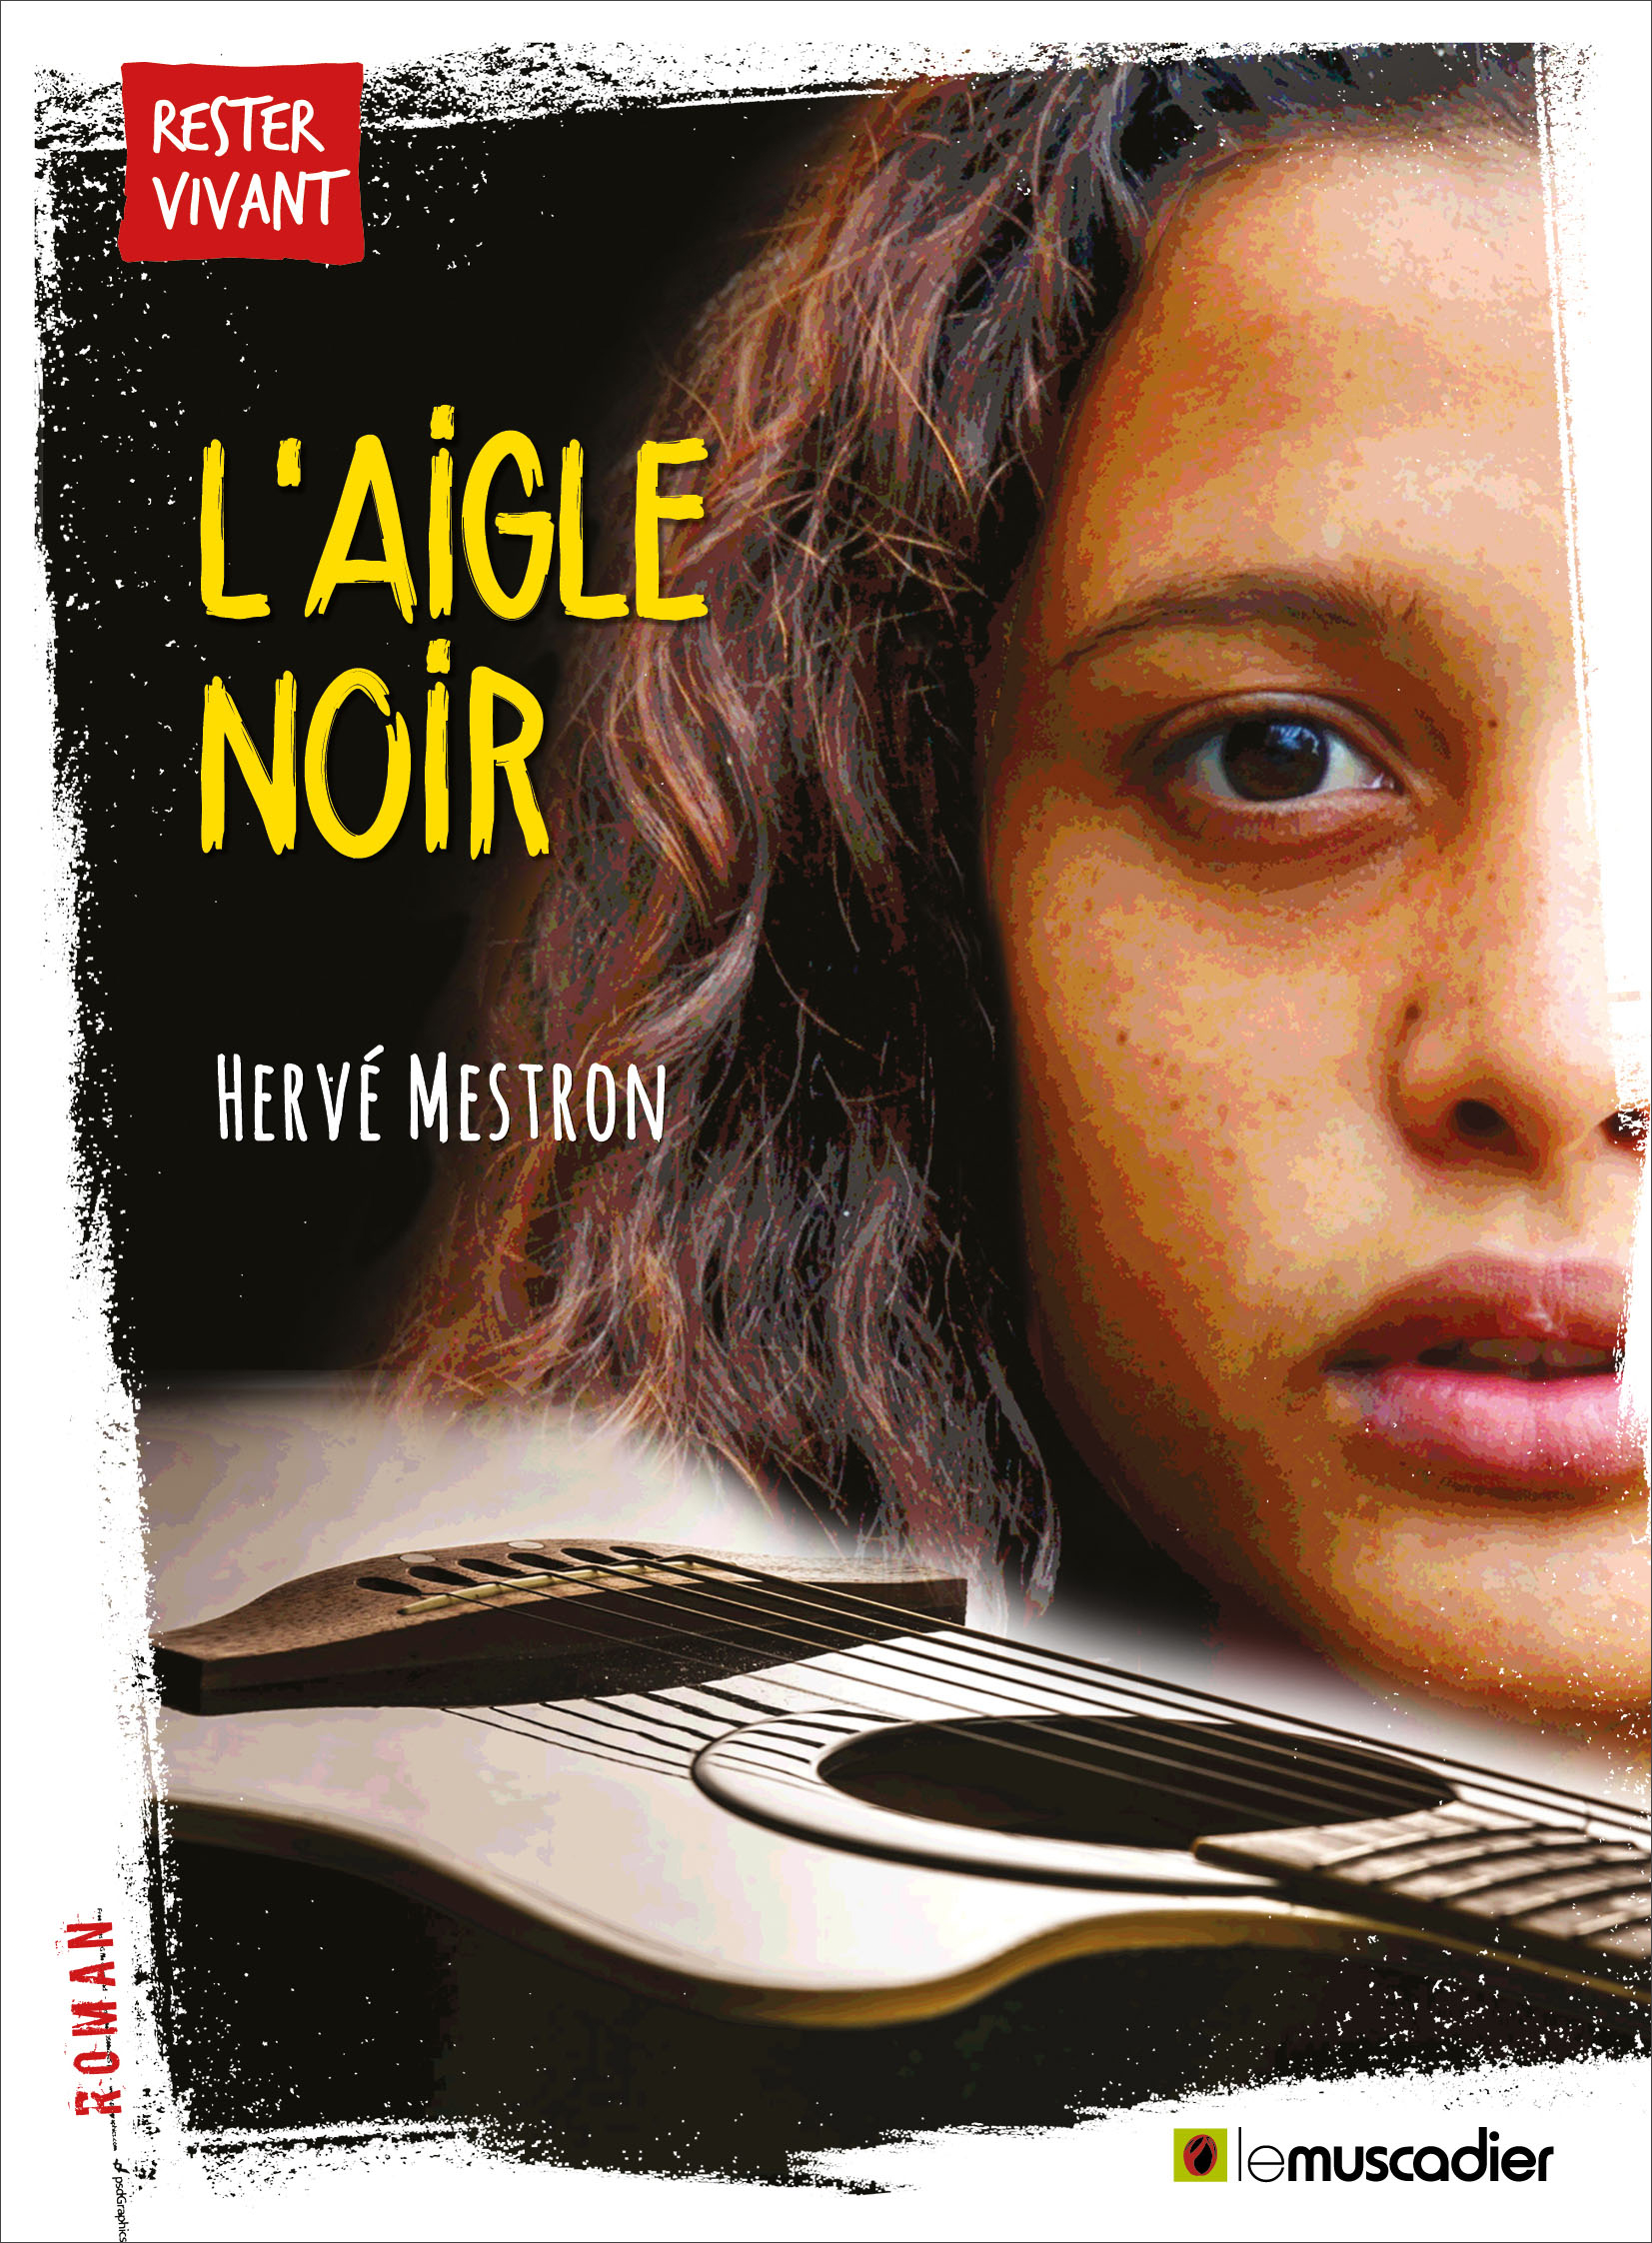 Couverture du livre "L’Aigle noir" - Hervé Mestron - ISBN 979-10-90685-98-7